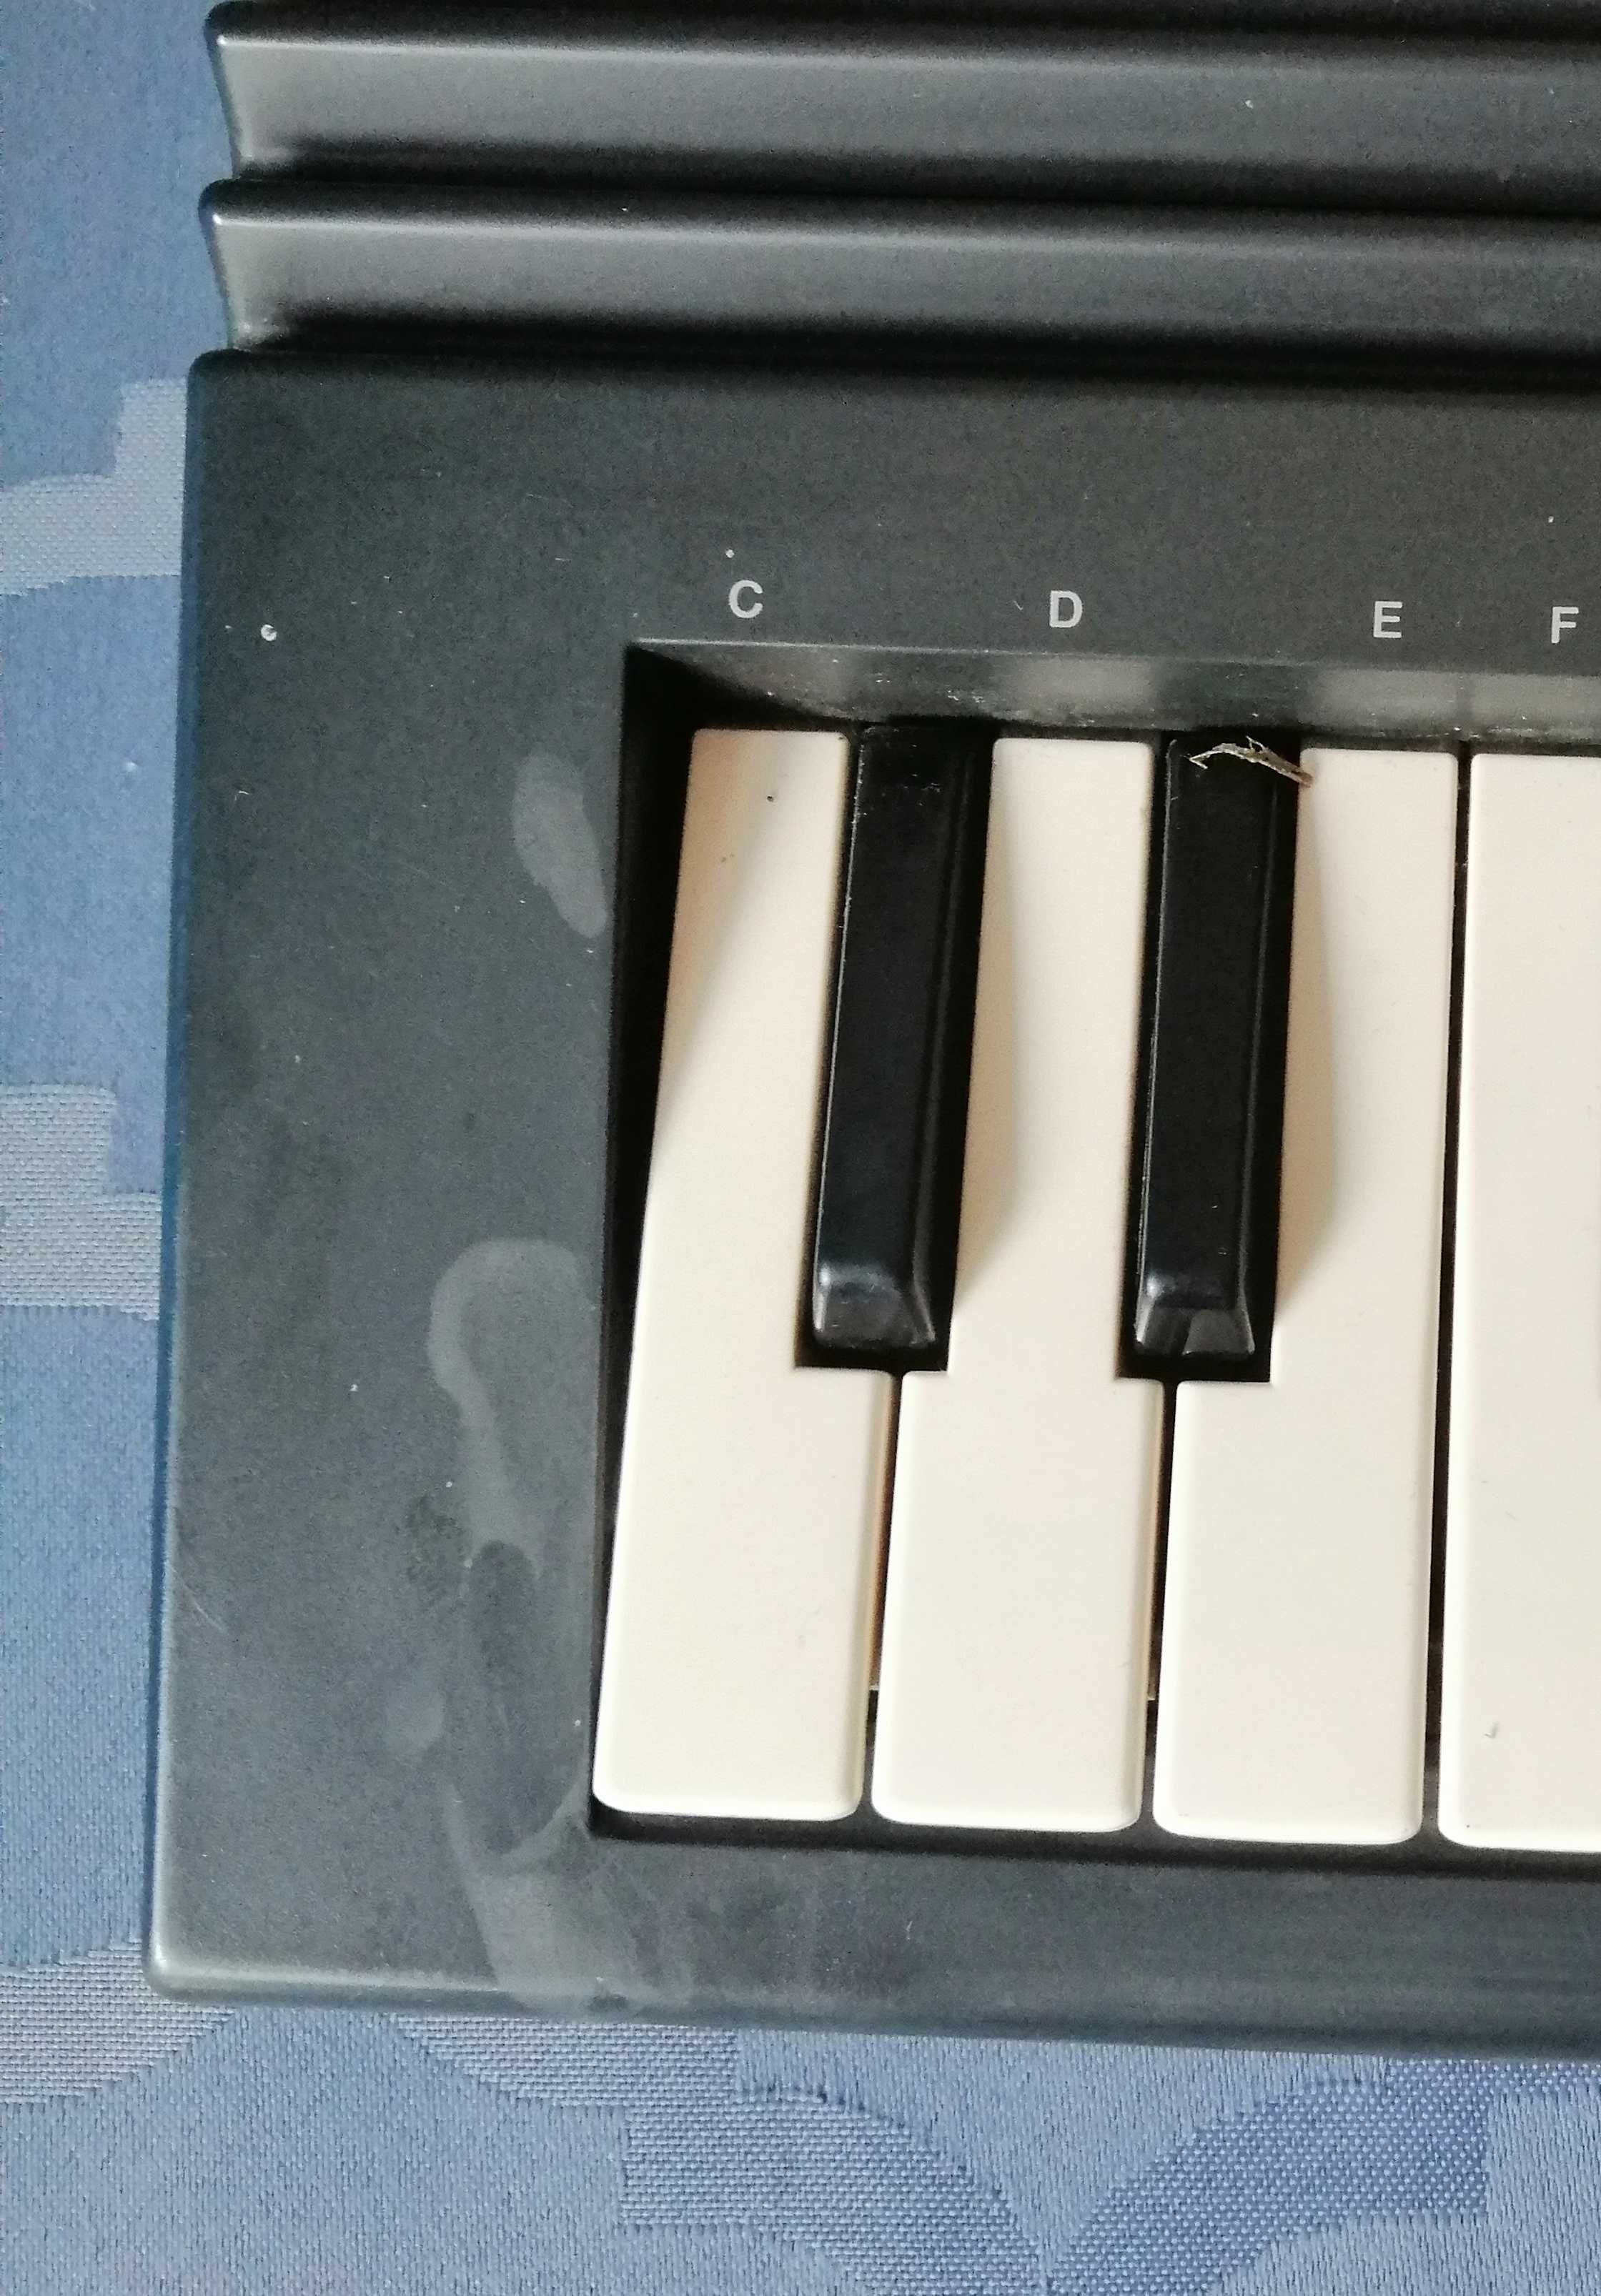 Keyboard Yamaha!